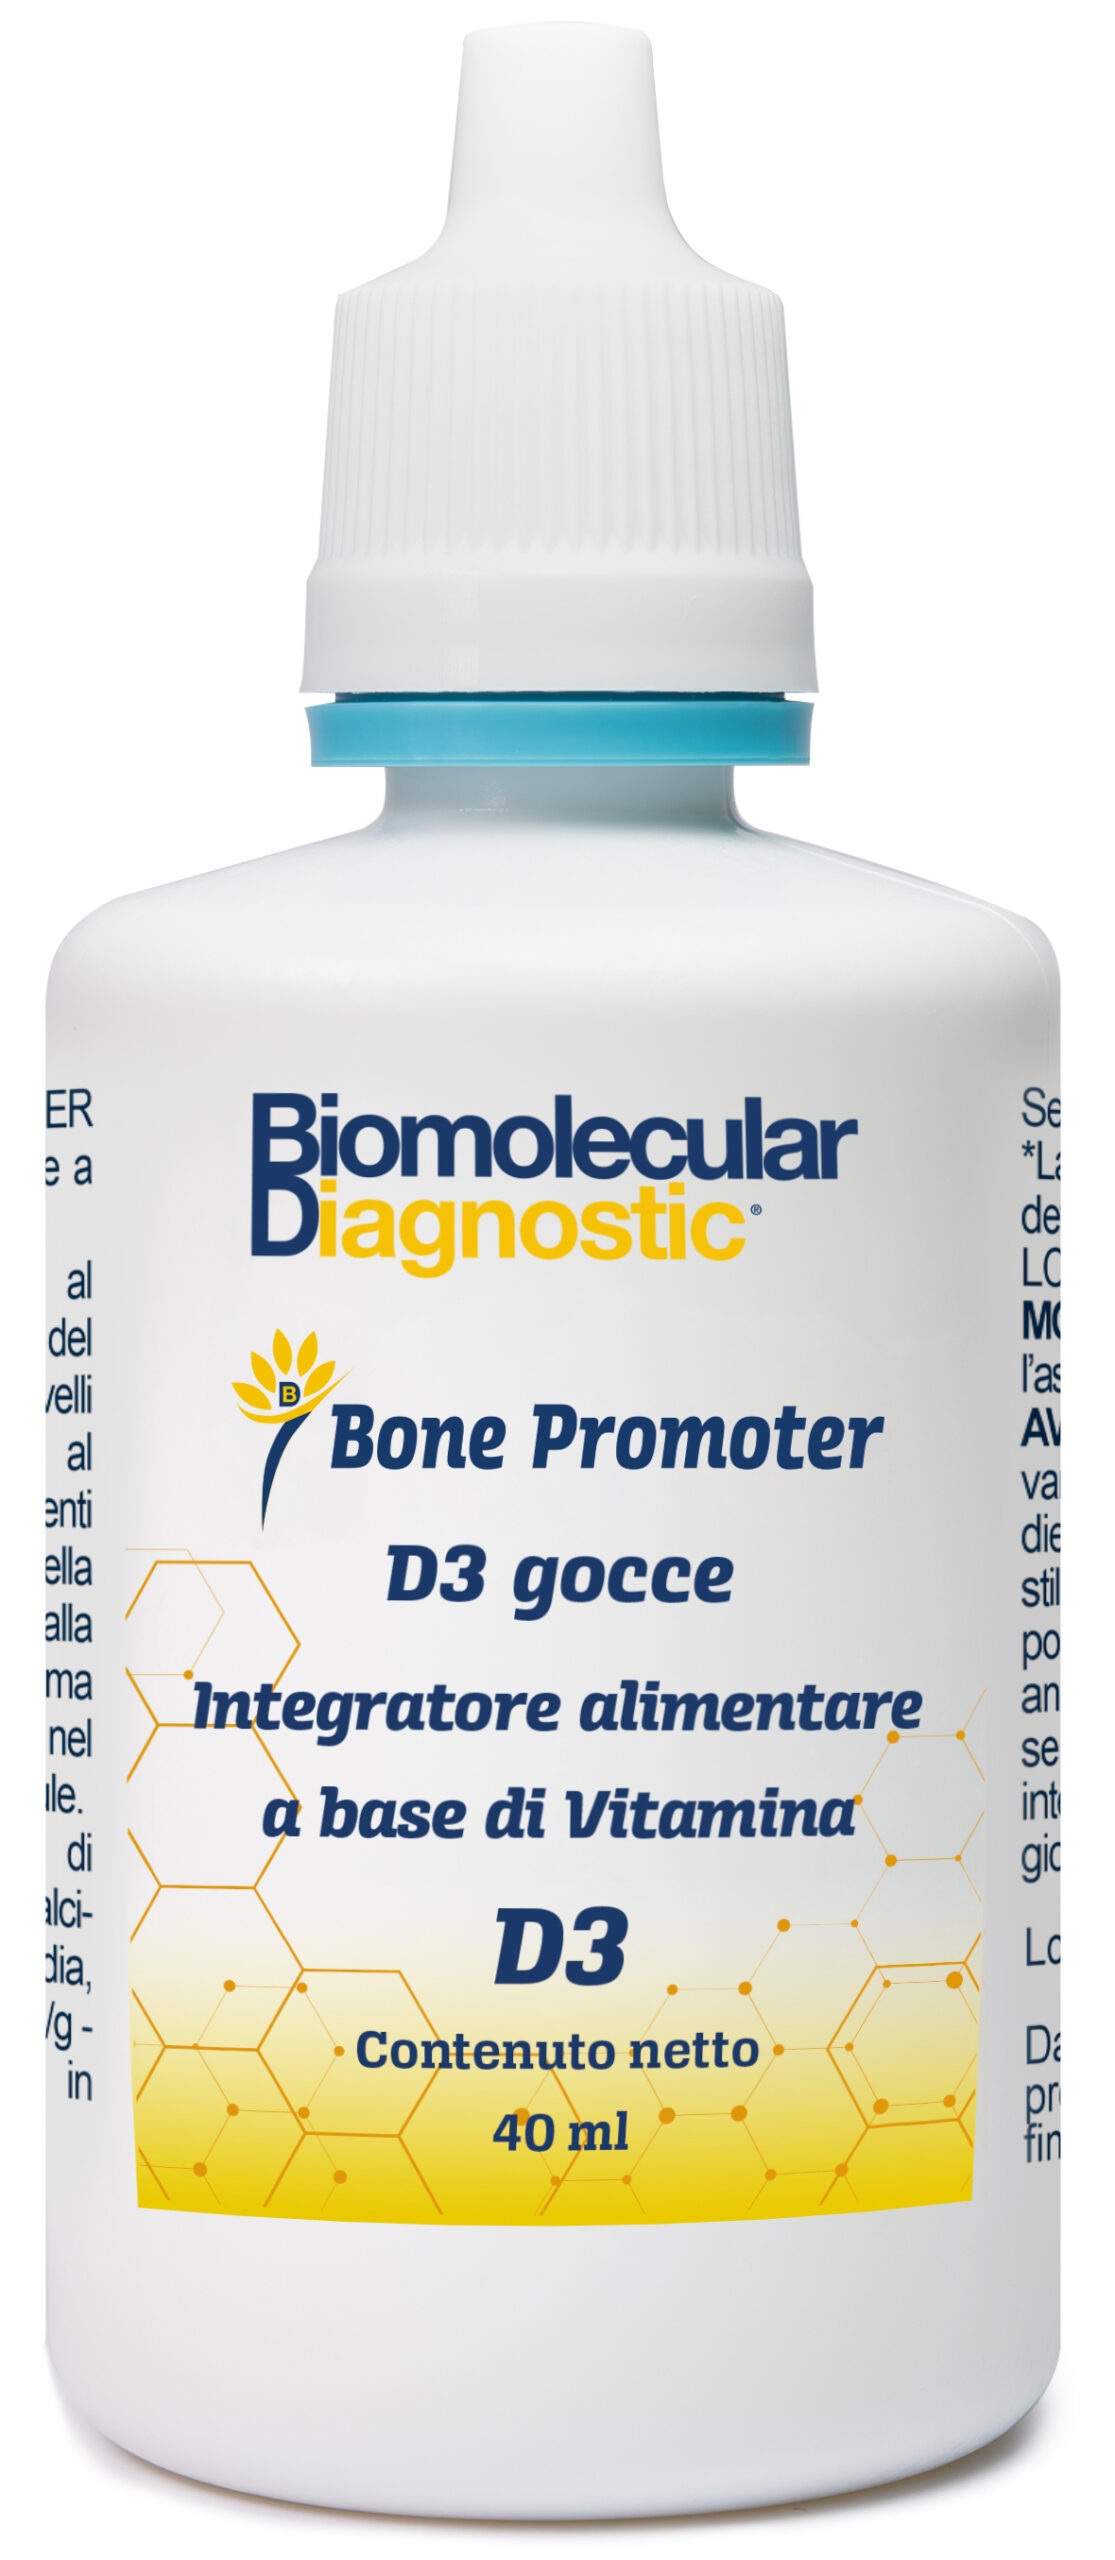 BONE PROMOTER di Biomolecular Diagnostic Firenze